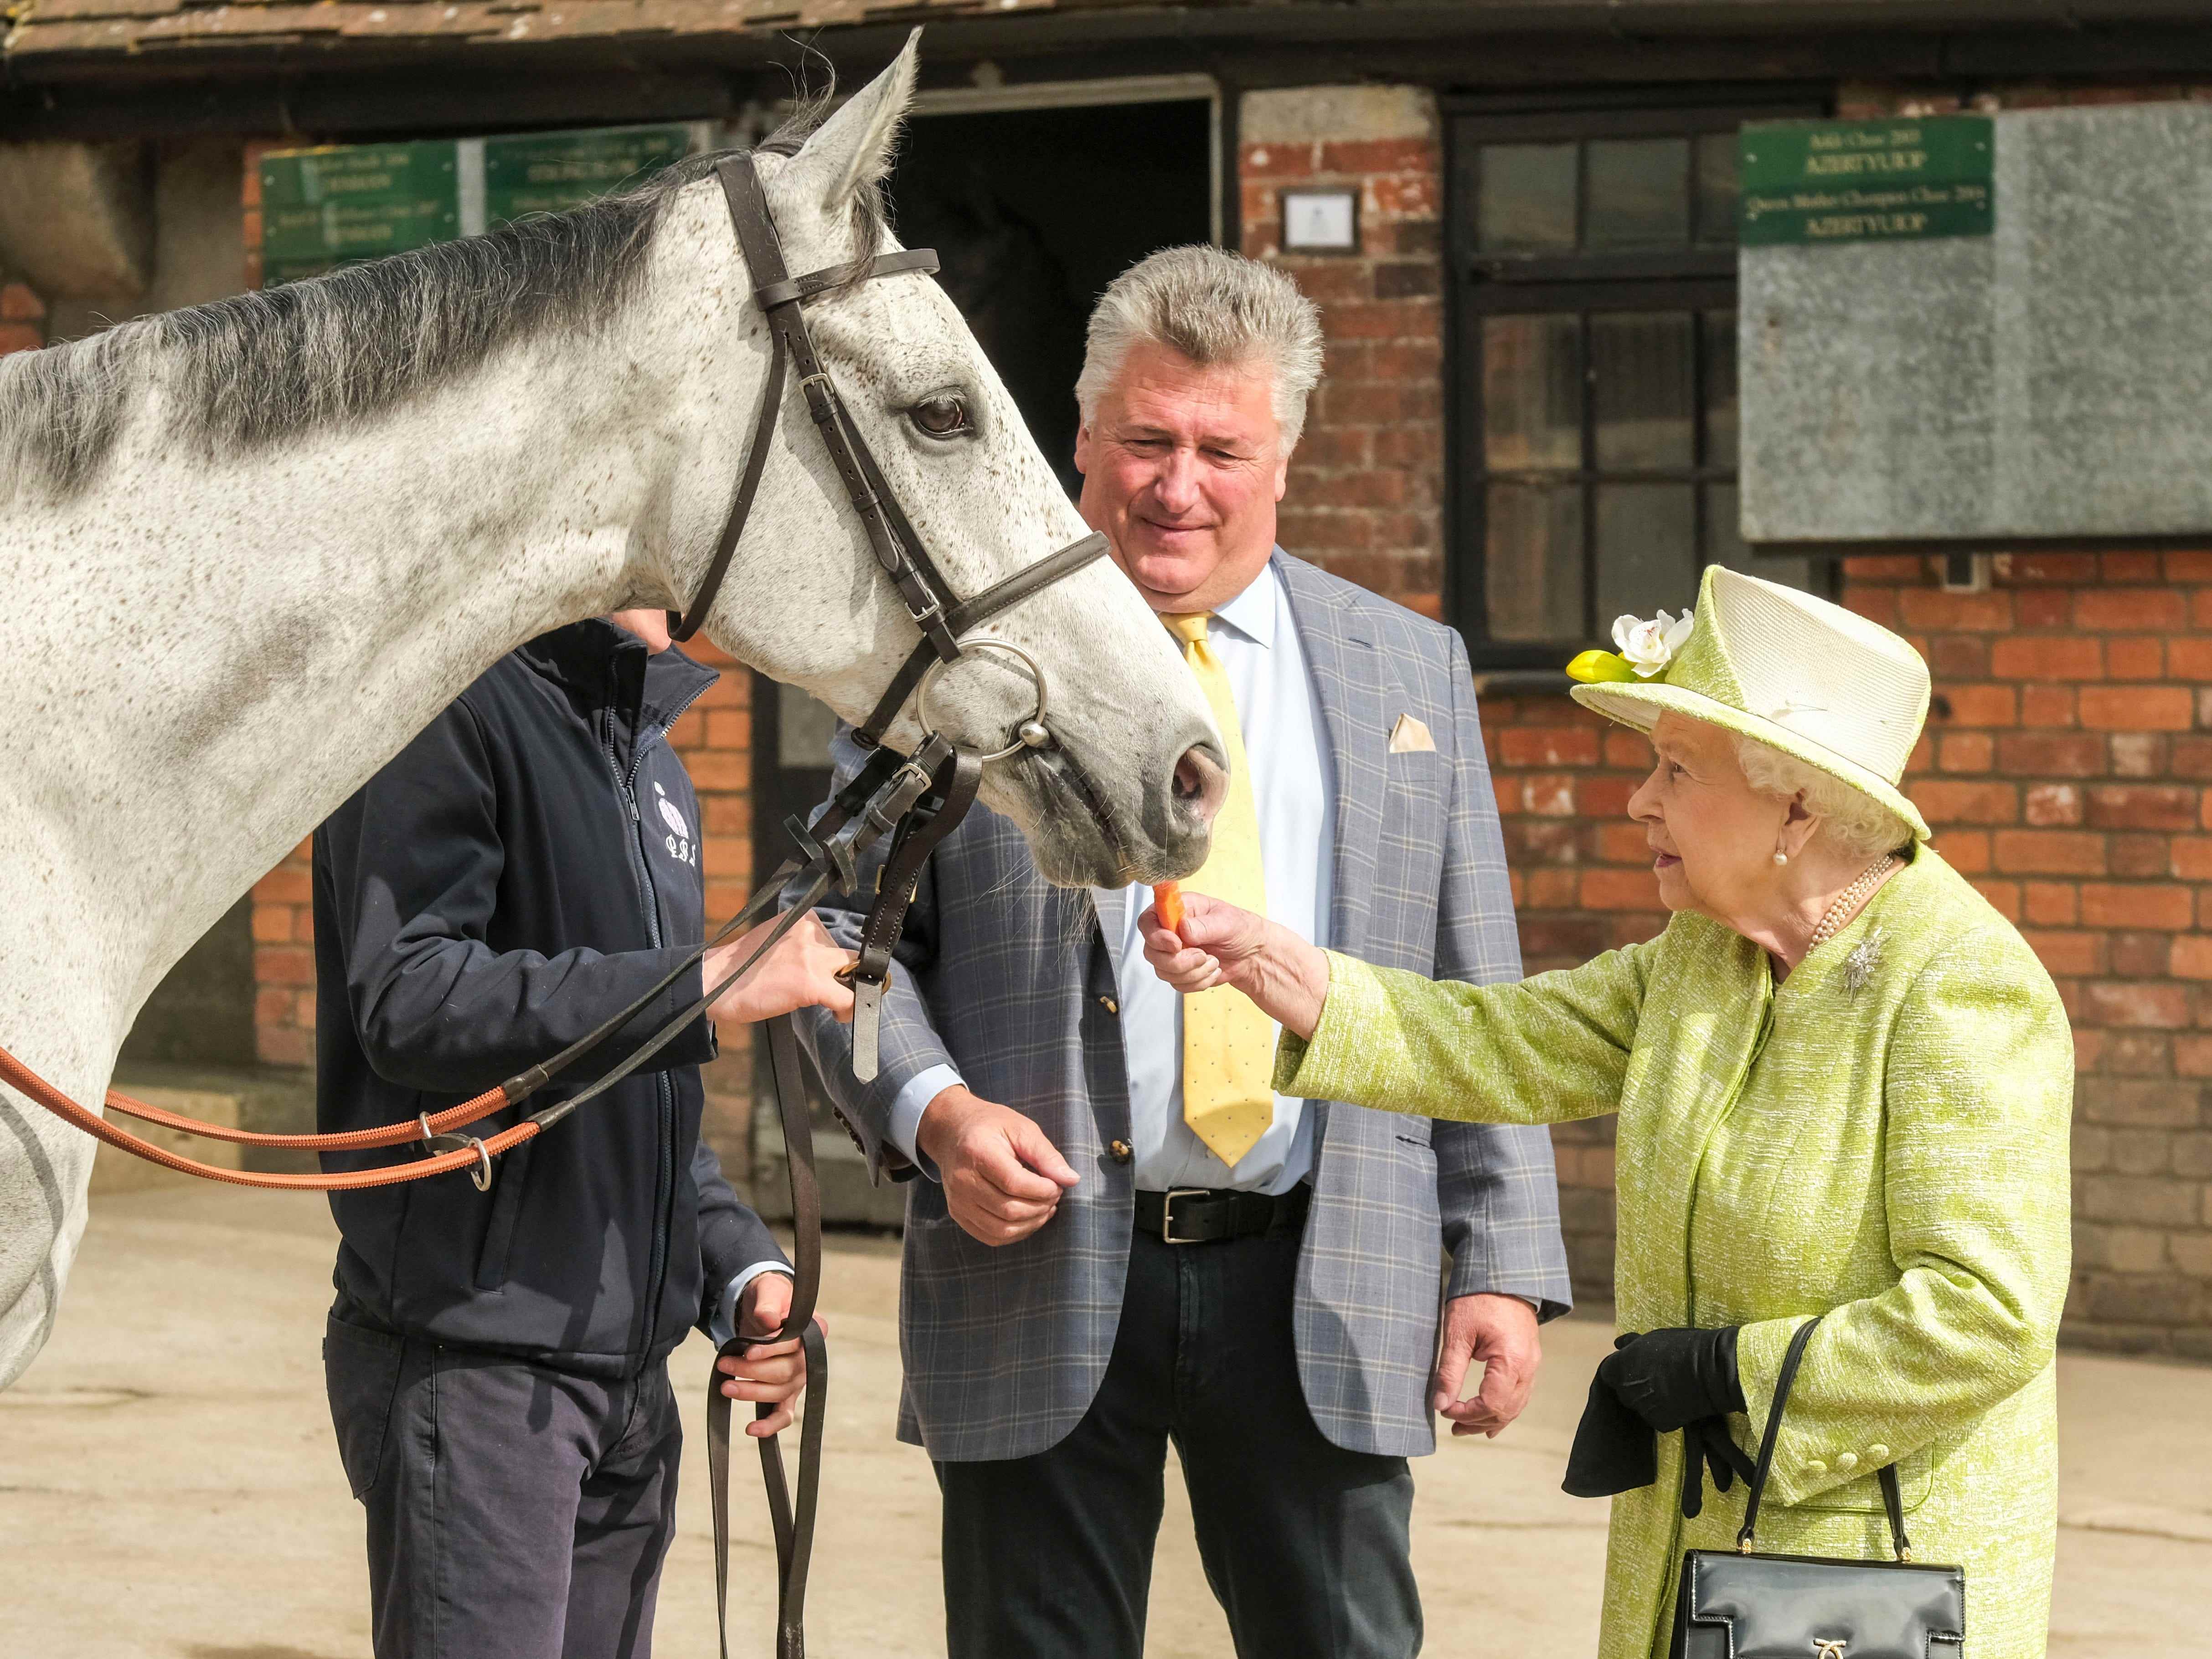 Queen Elizabeth füttert ein Pferd mit einer Karotte.